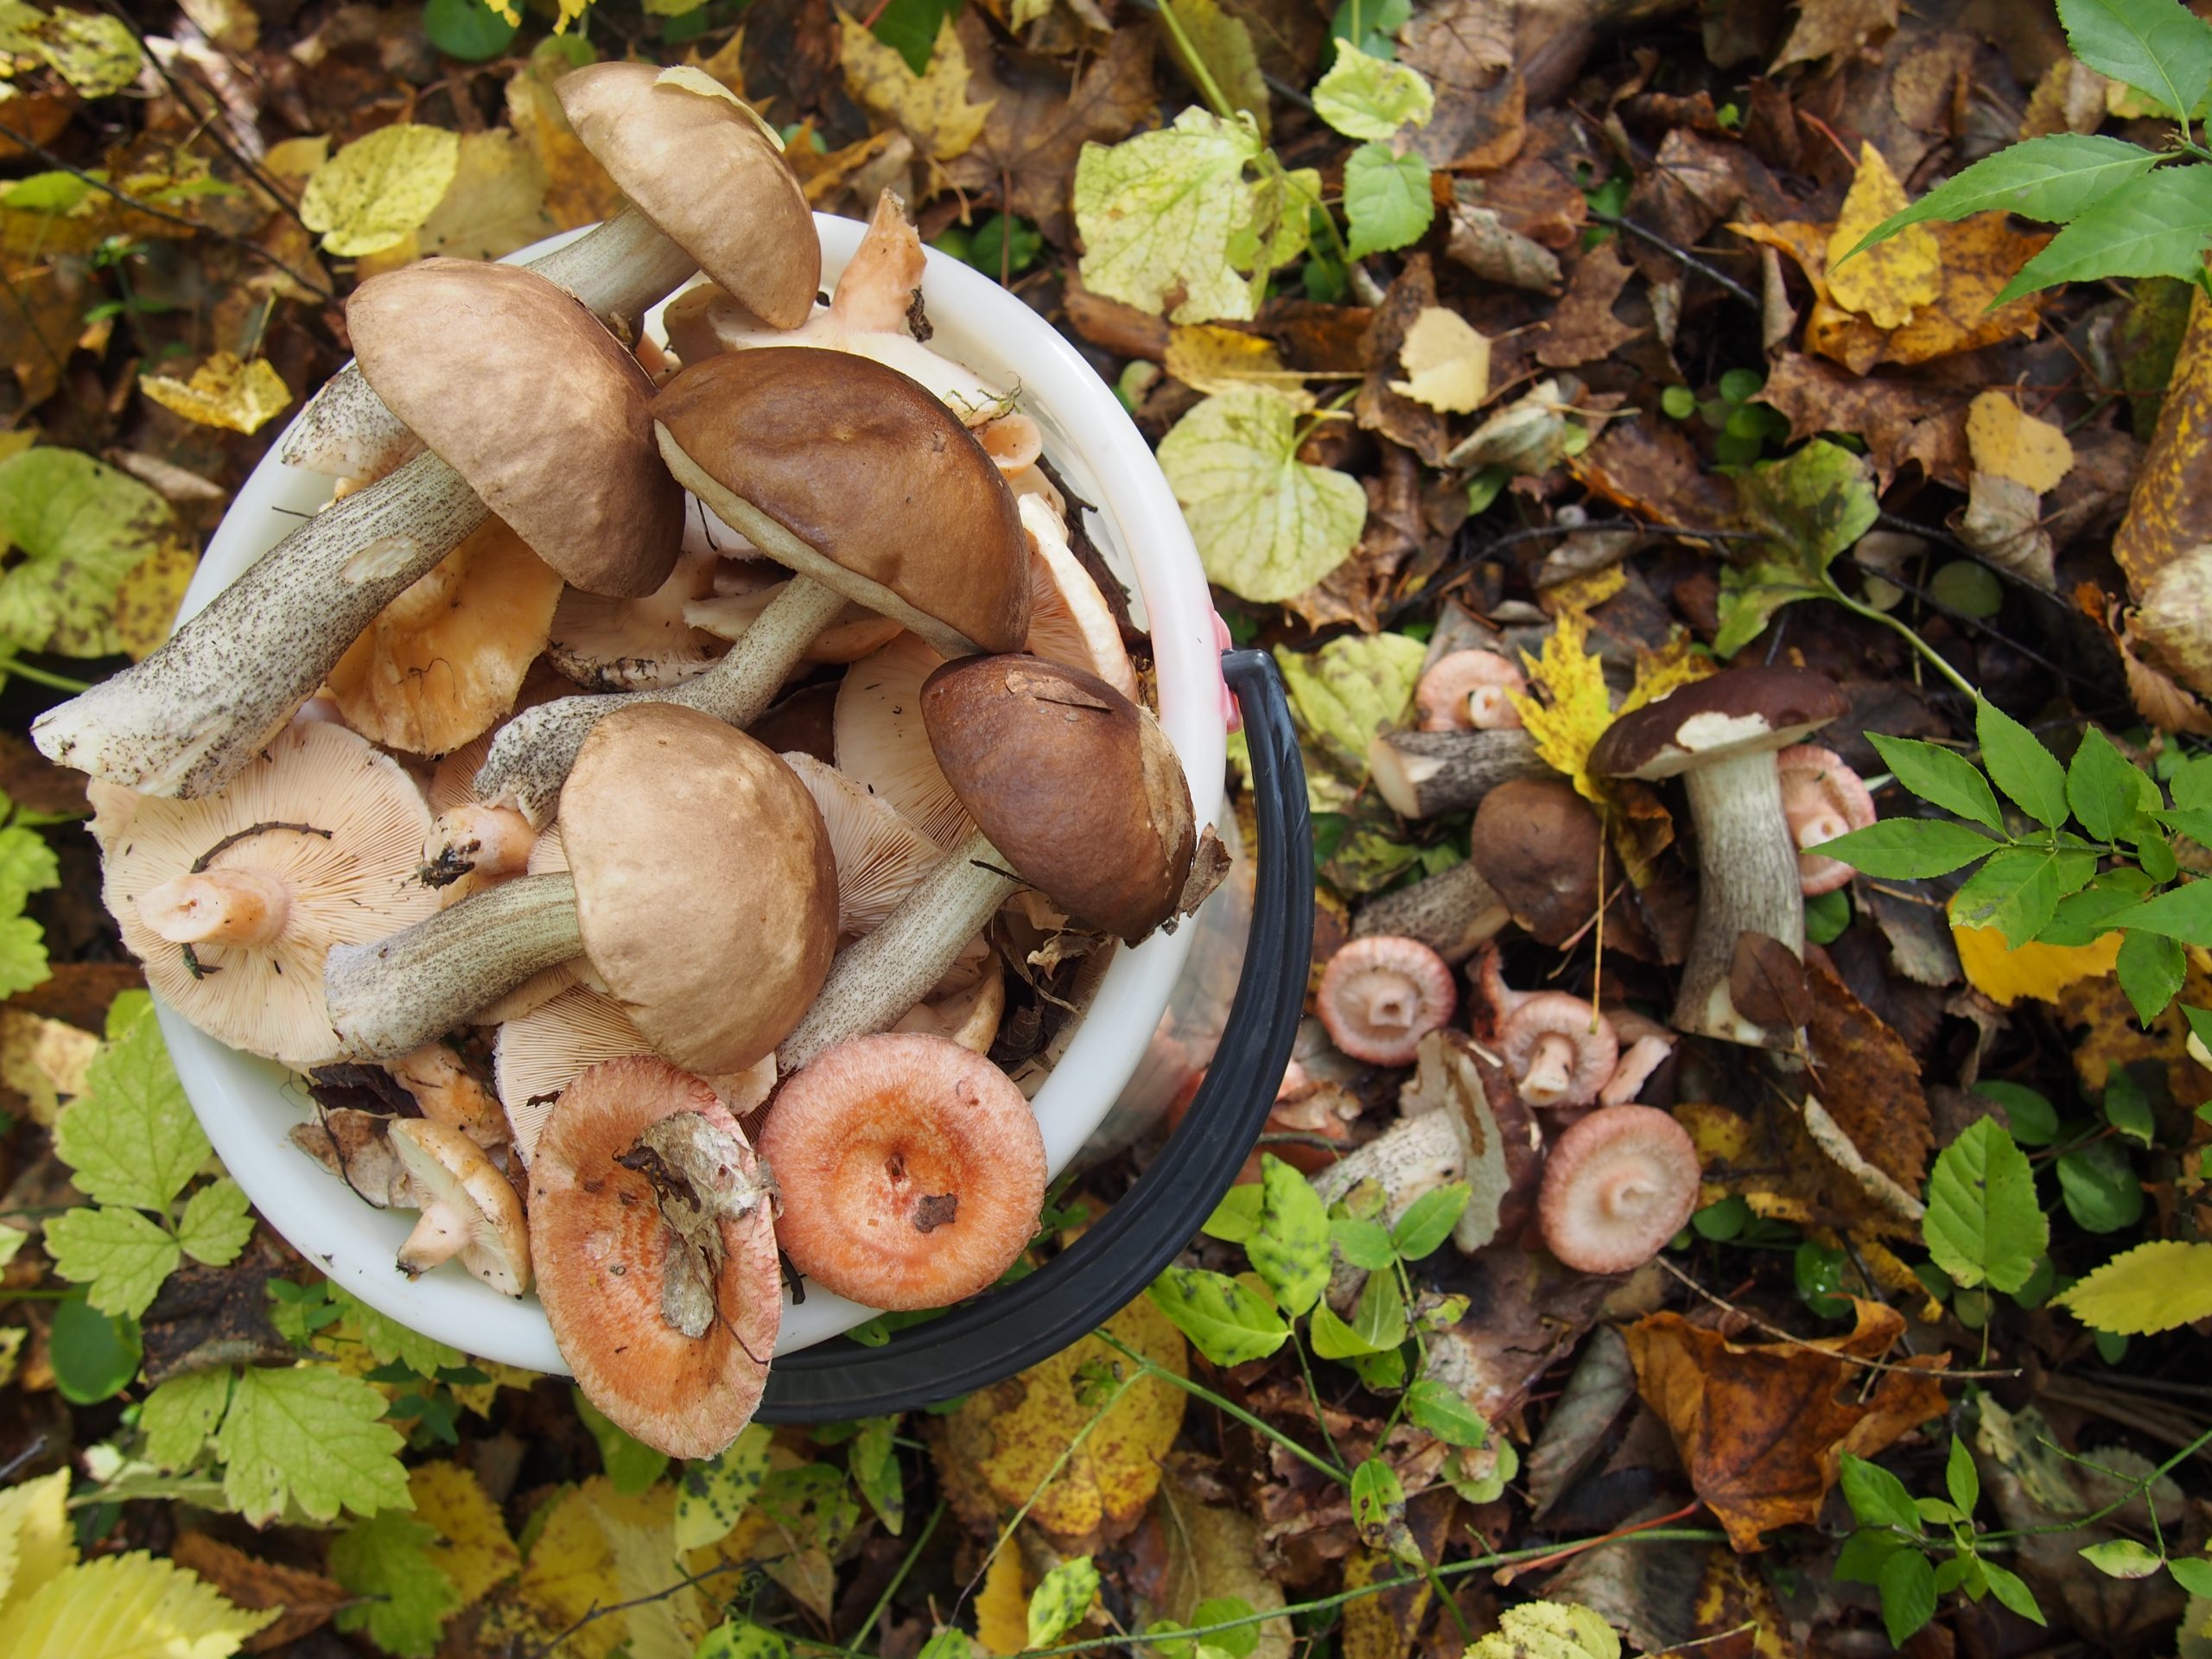 съедобные грибы самарской области фото